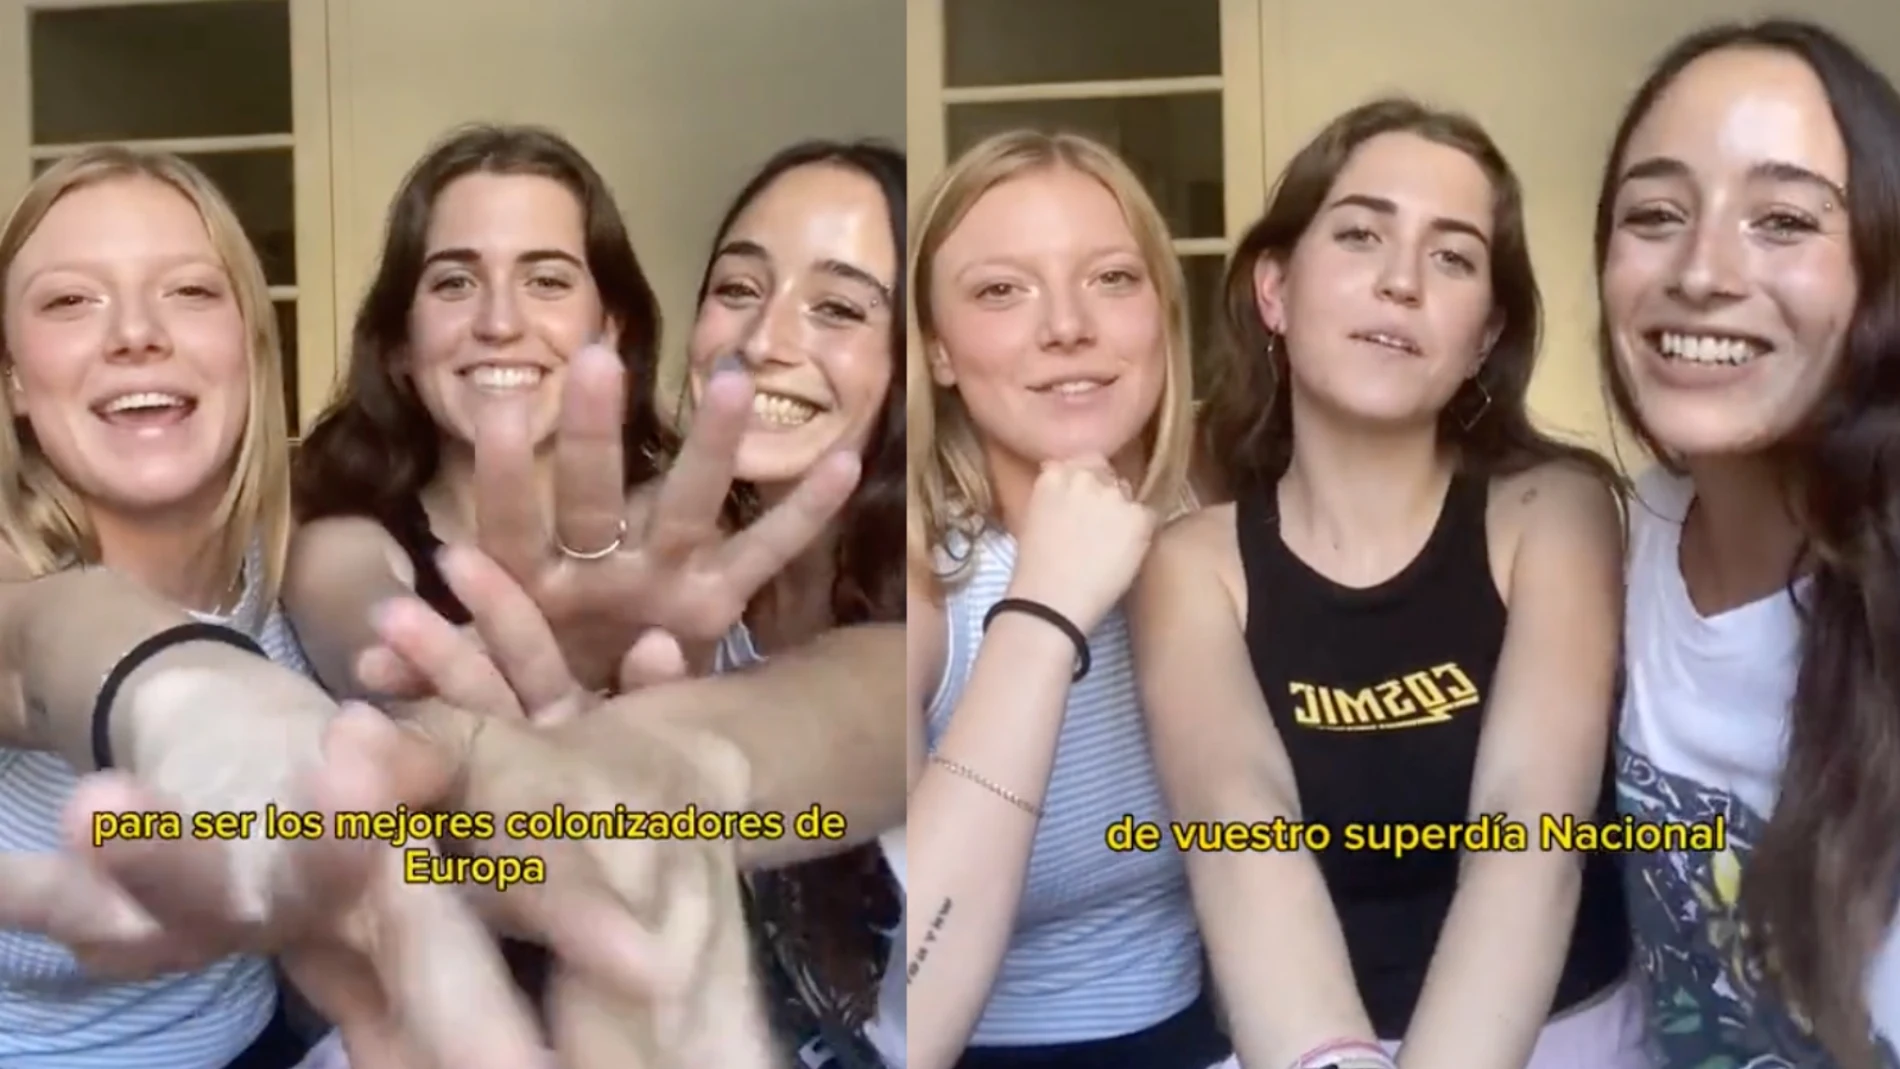 Un grupo de chicas catalanas sube un vídeo felicitando el Día de la Fiesta Nacional